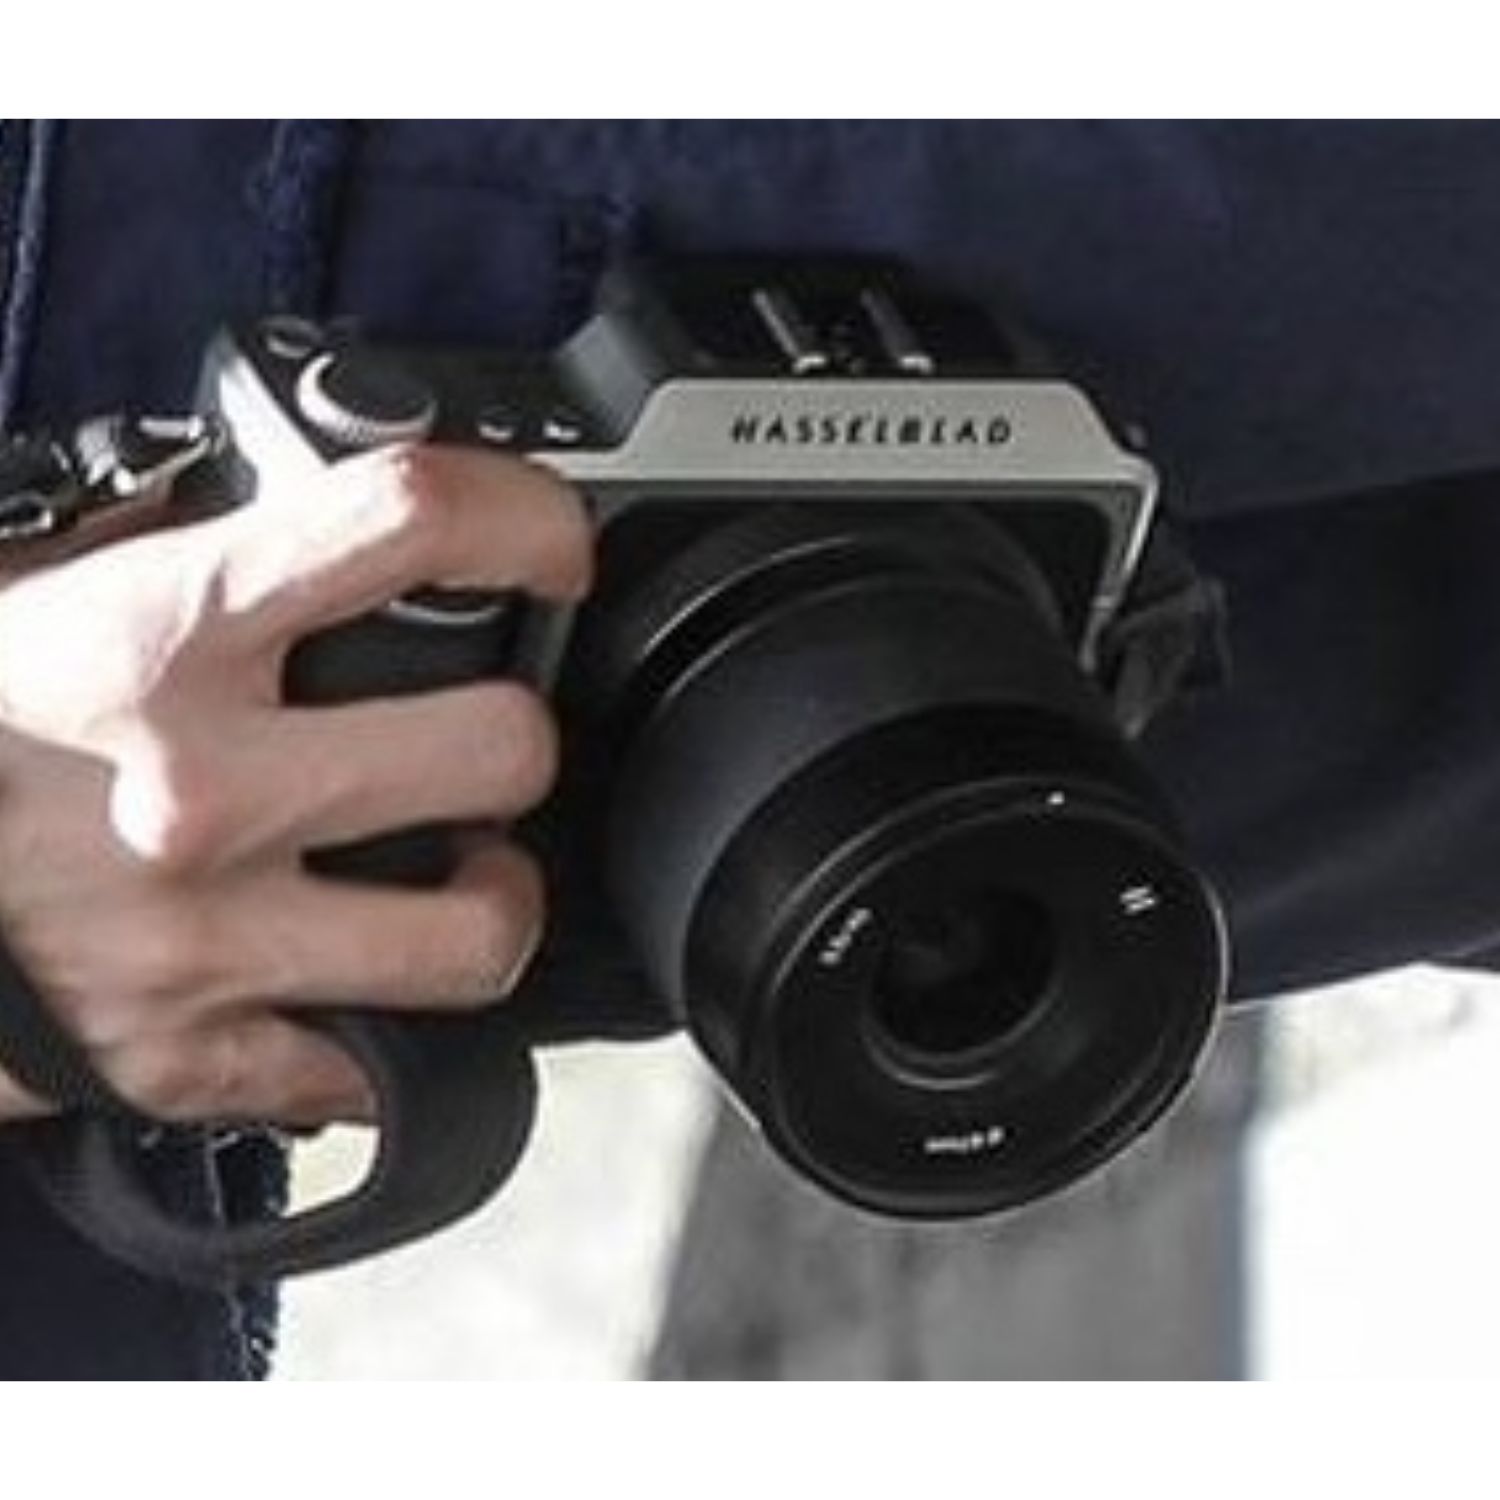 [TFBOYS][分享]170916 千玺街拍照单反品牌解析 哈苏相机卖价近6万